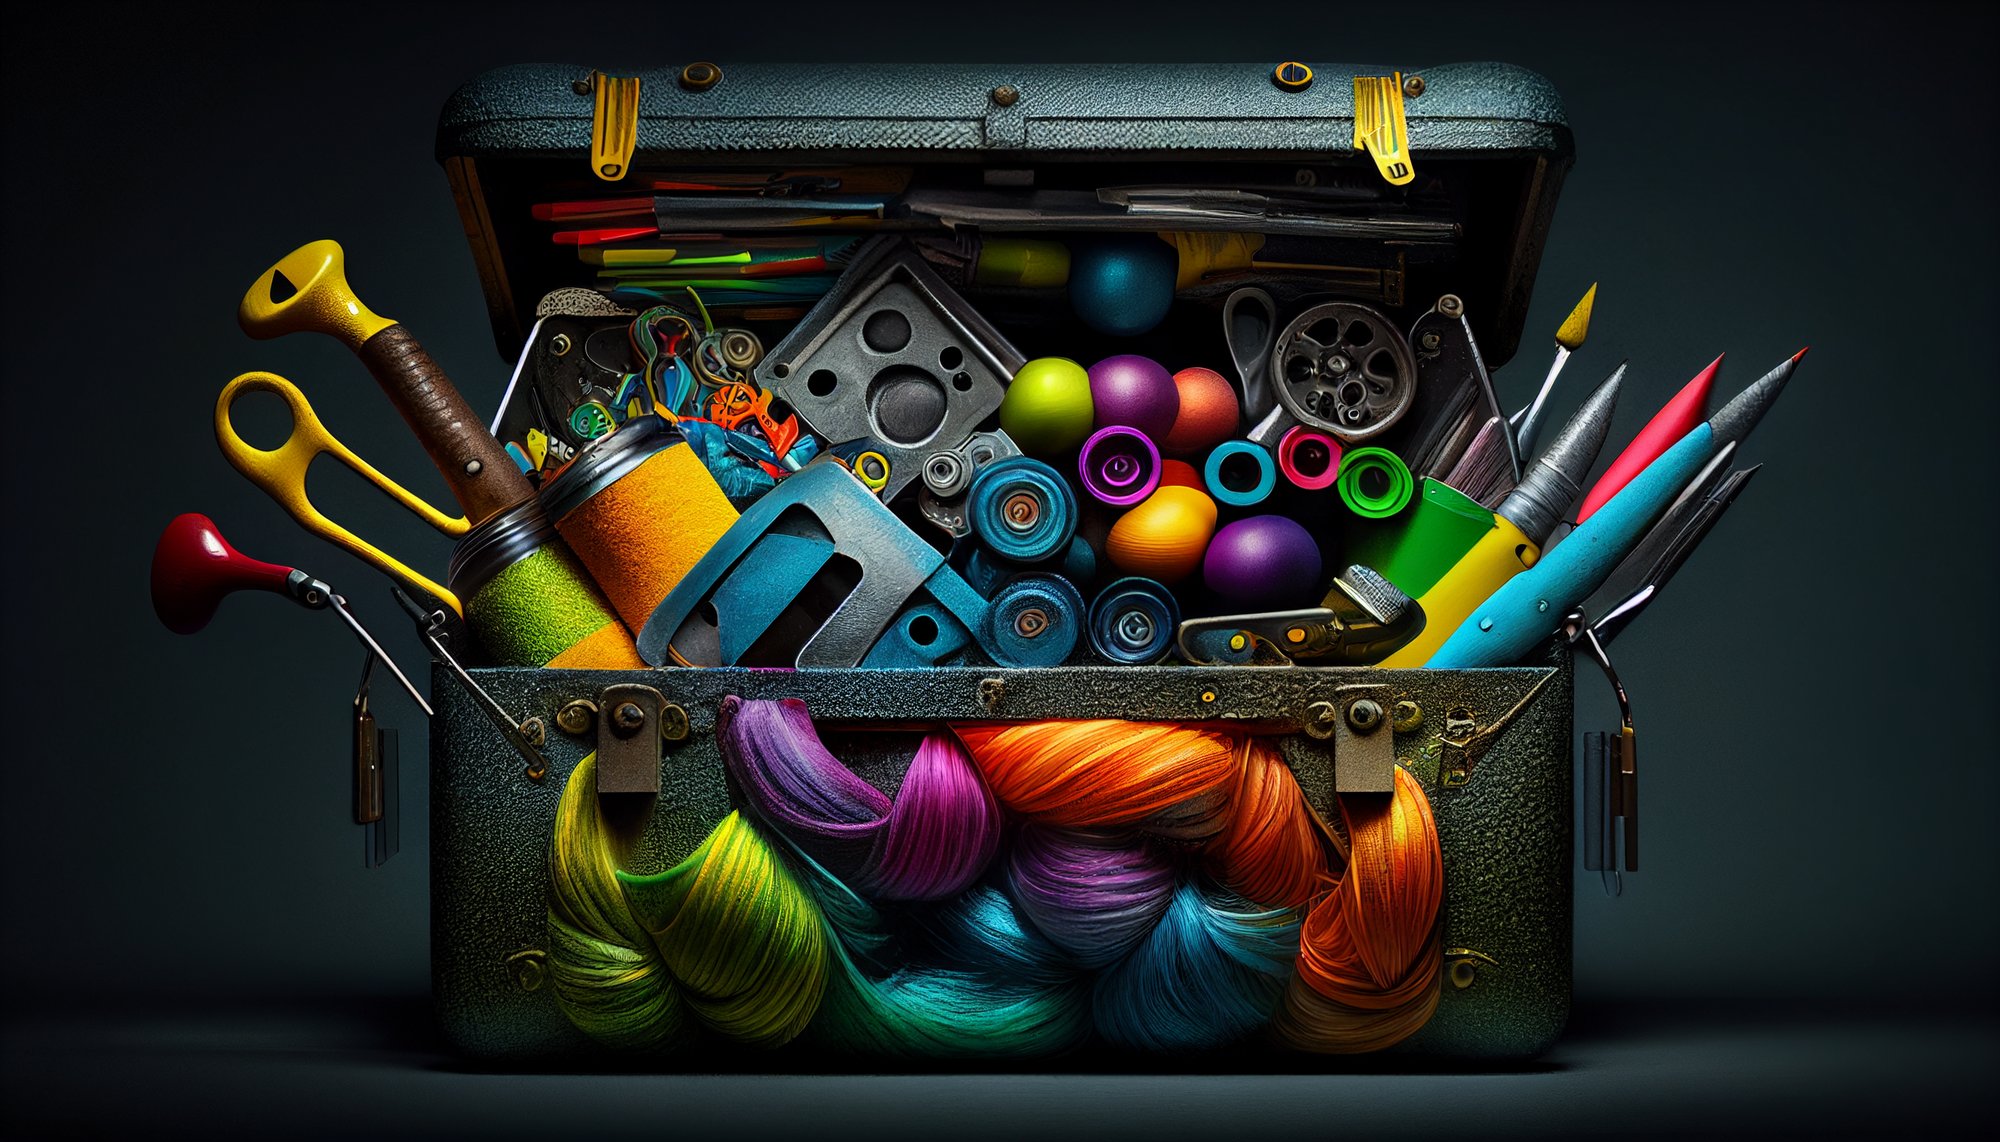 Sverre_a_toolbox_of_creative_tools_in_vibrant_creative_colors_d_a9bdfd9e-4578-4418-a0c3-ca0d07f9dda7